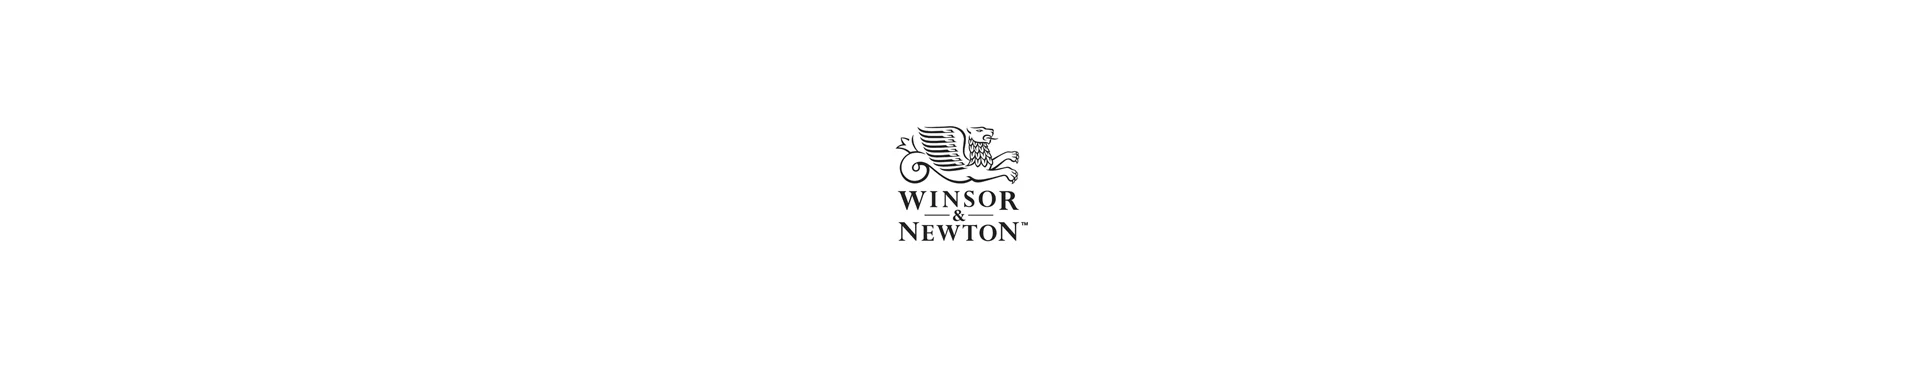 Winsor Nrwton